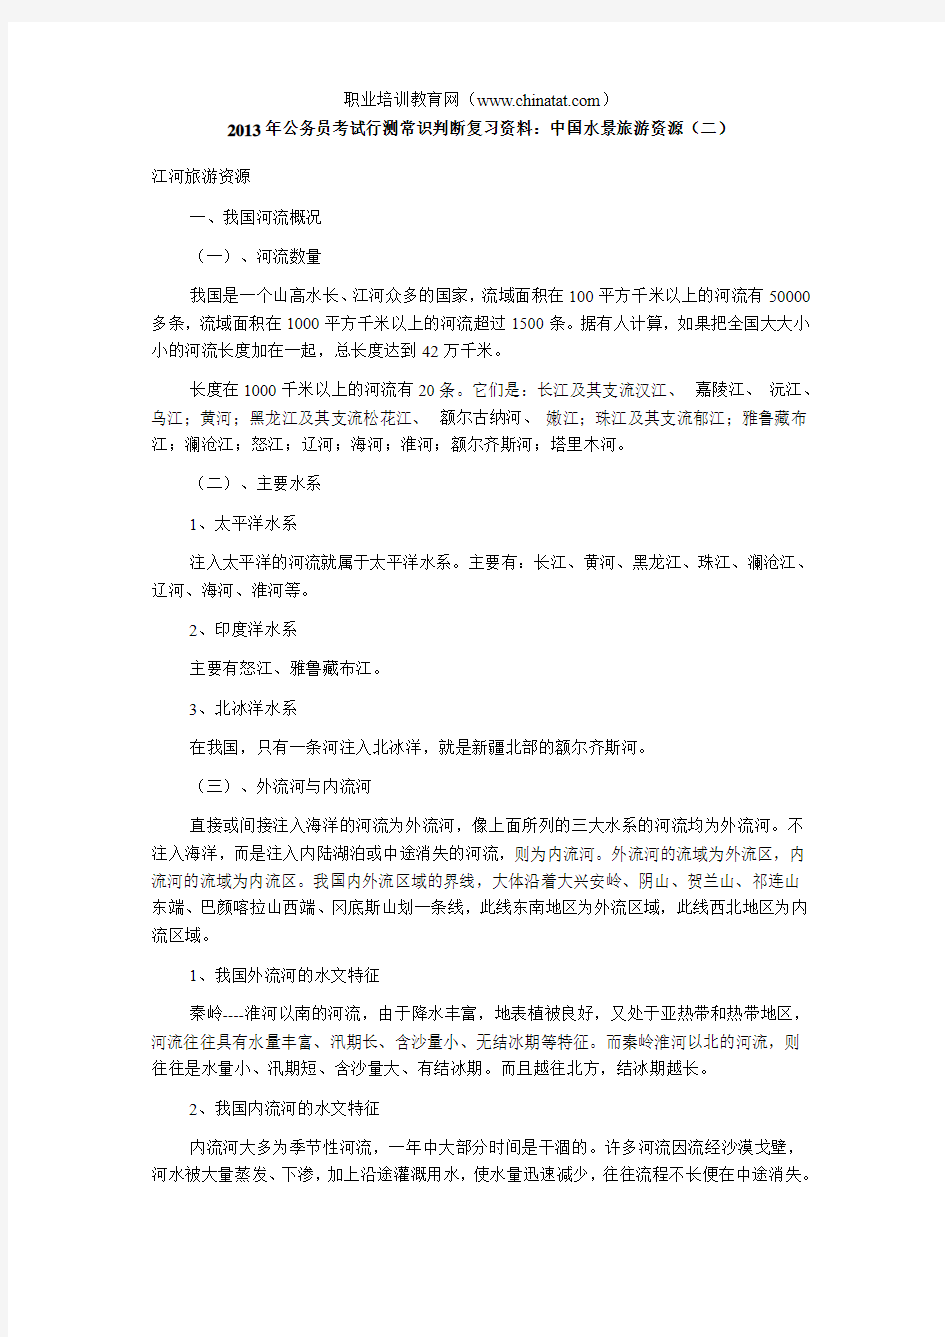 2013年公务员考试行测常识判断复习资料：中国水景旅游资源(二)